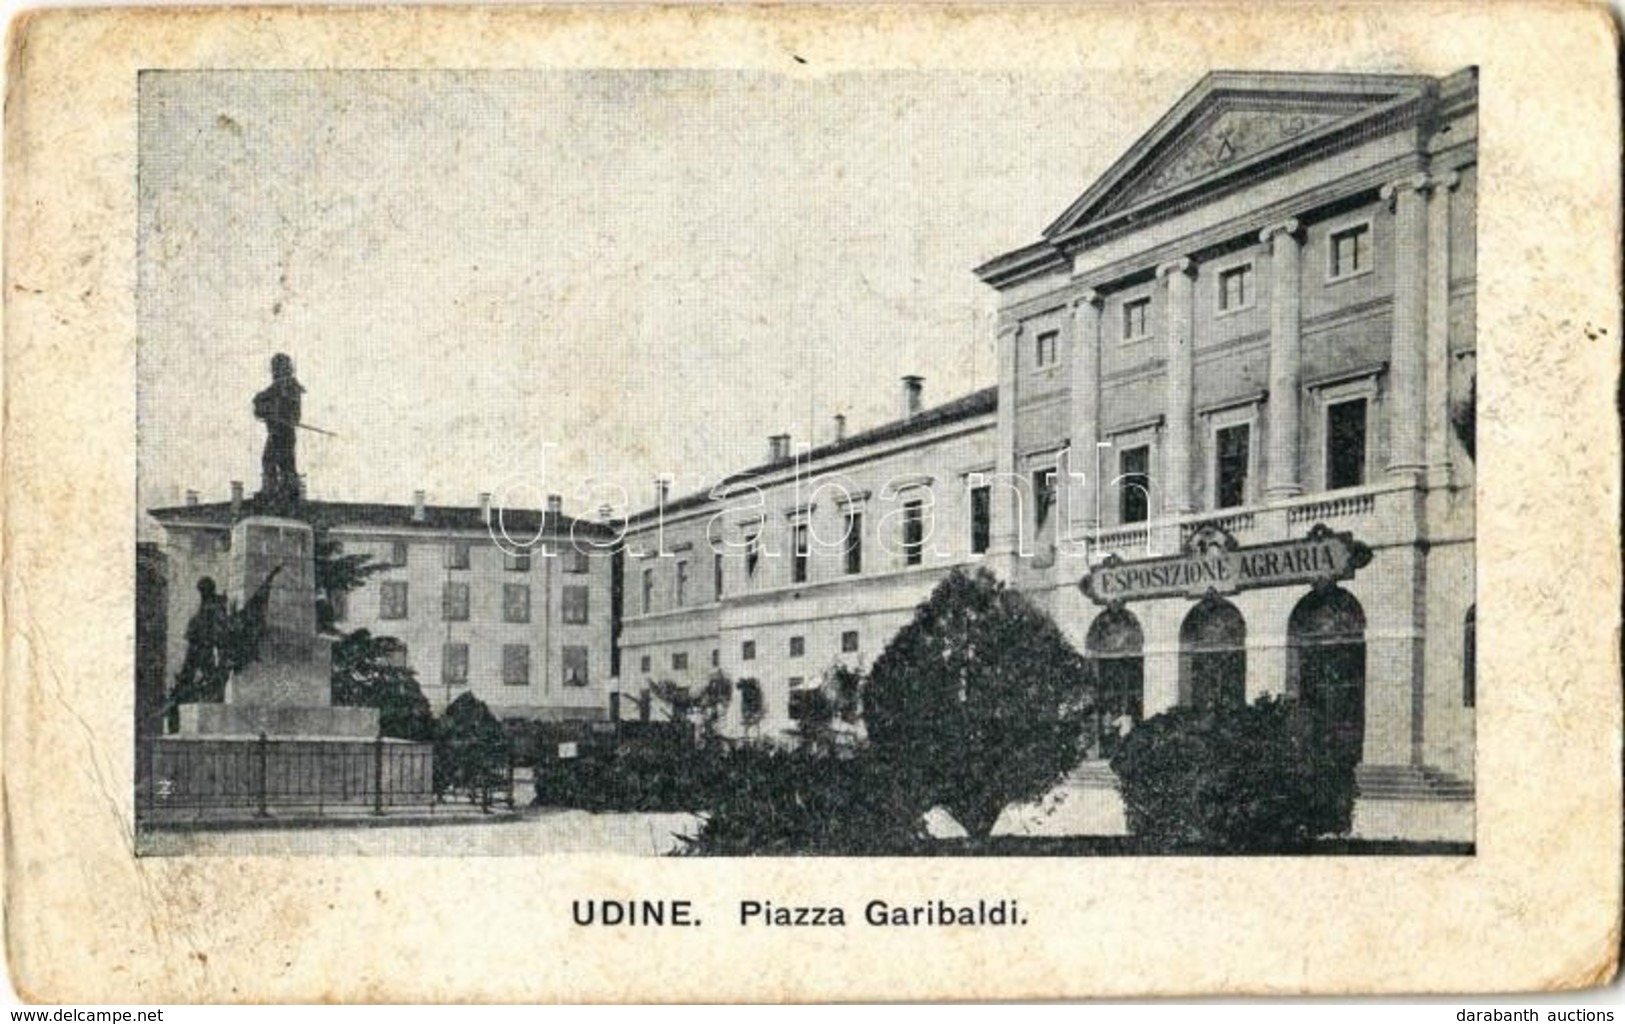 T3 1918 Udine, Piazza Garibaldi, Esposizione Agraria / Square, Agricultural Exhibition (EB) - Ohne Zuordnung